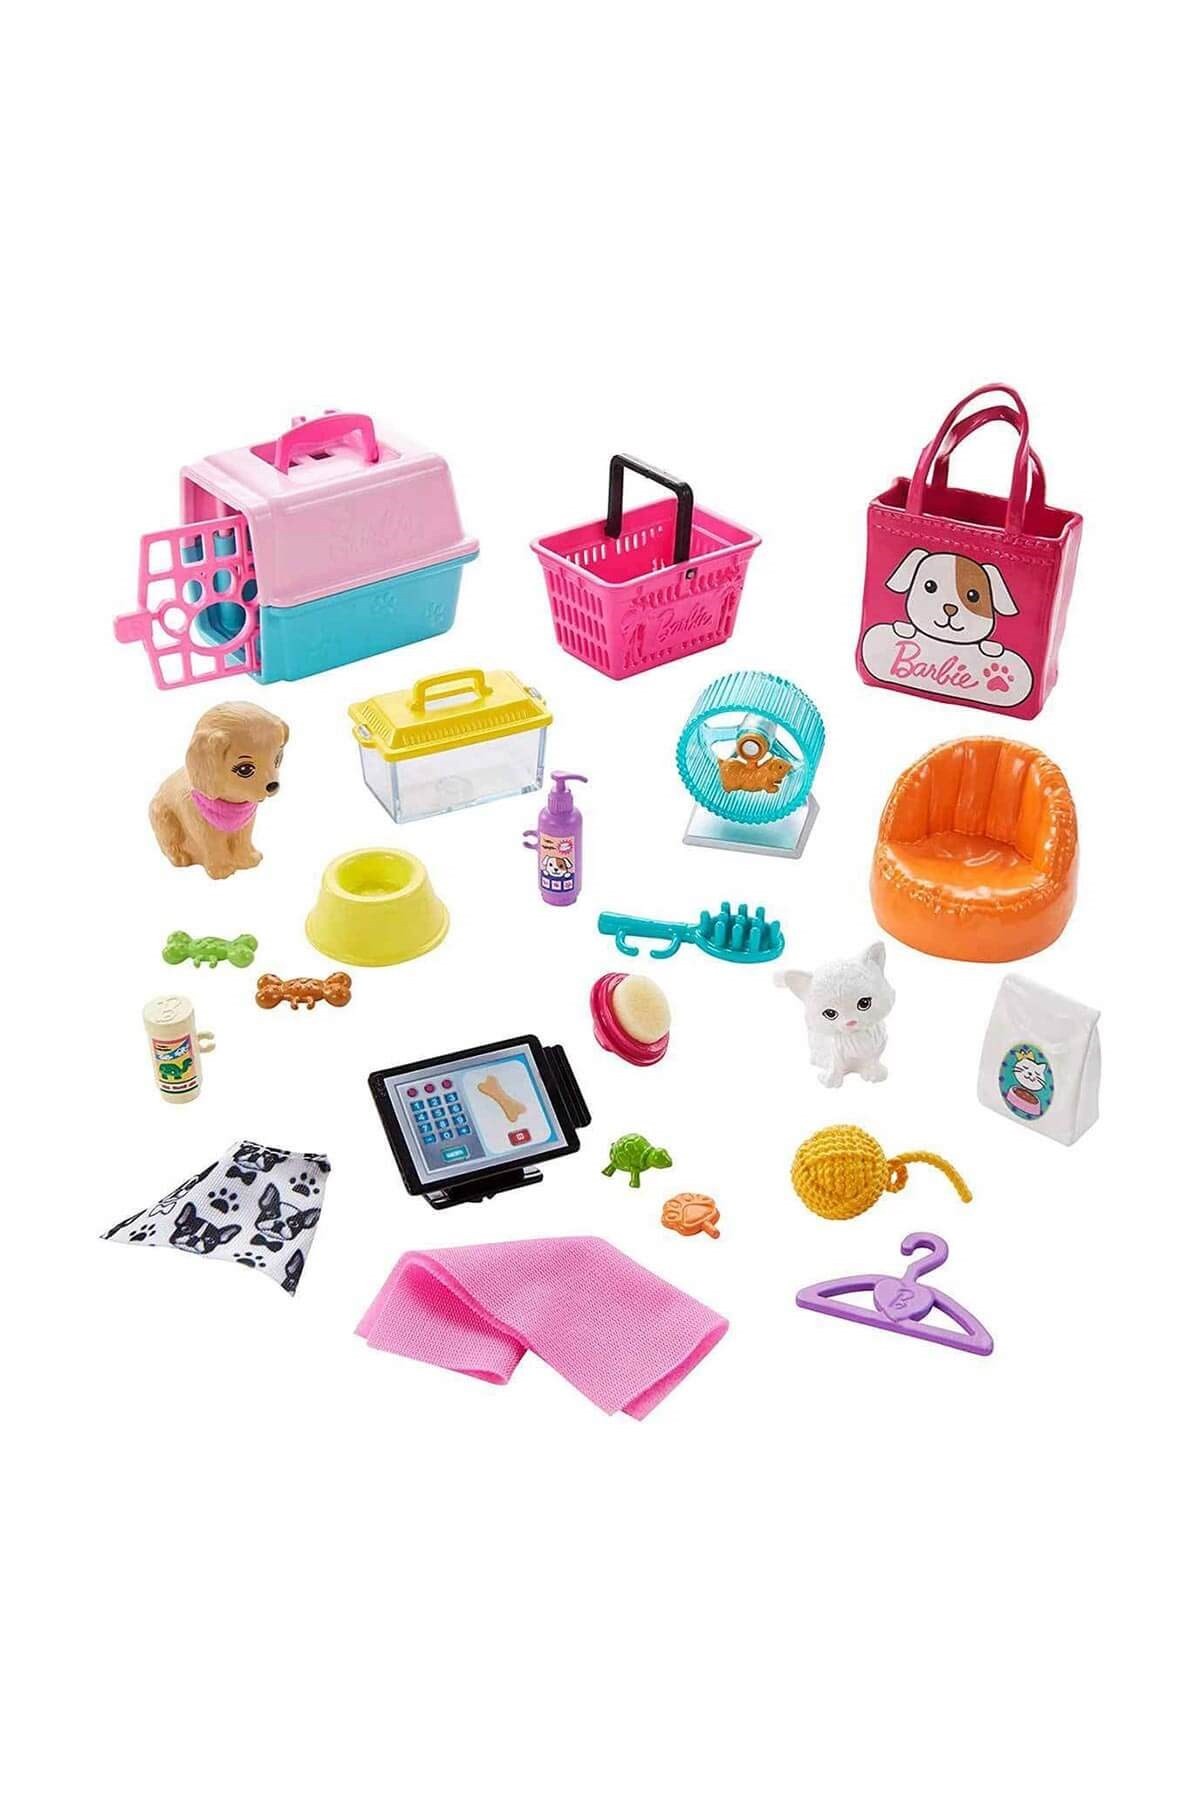 Barbie ve Evcil Hayvan Dükkanı Oyun Seti GRG90